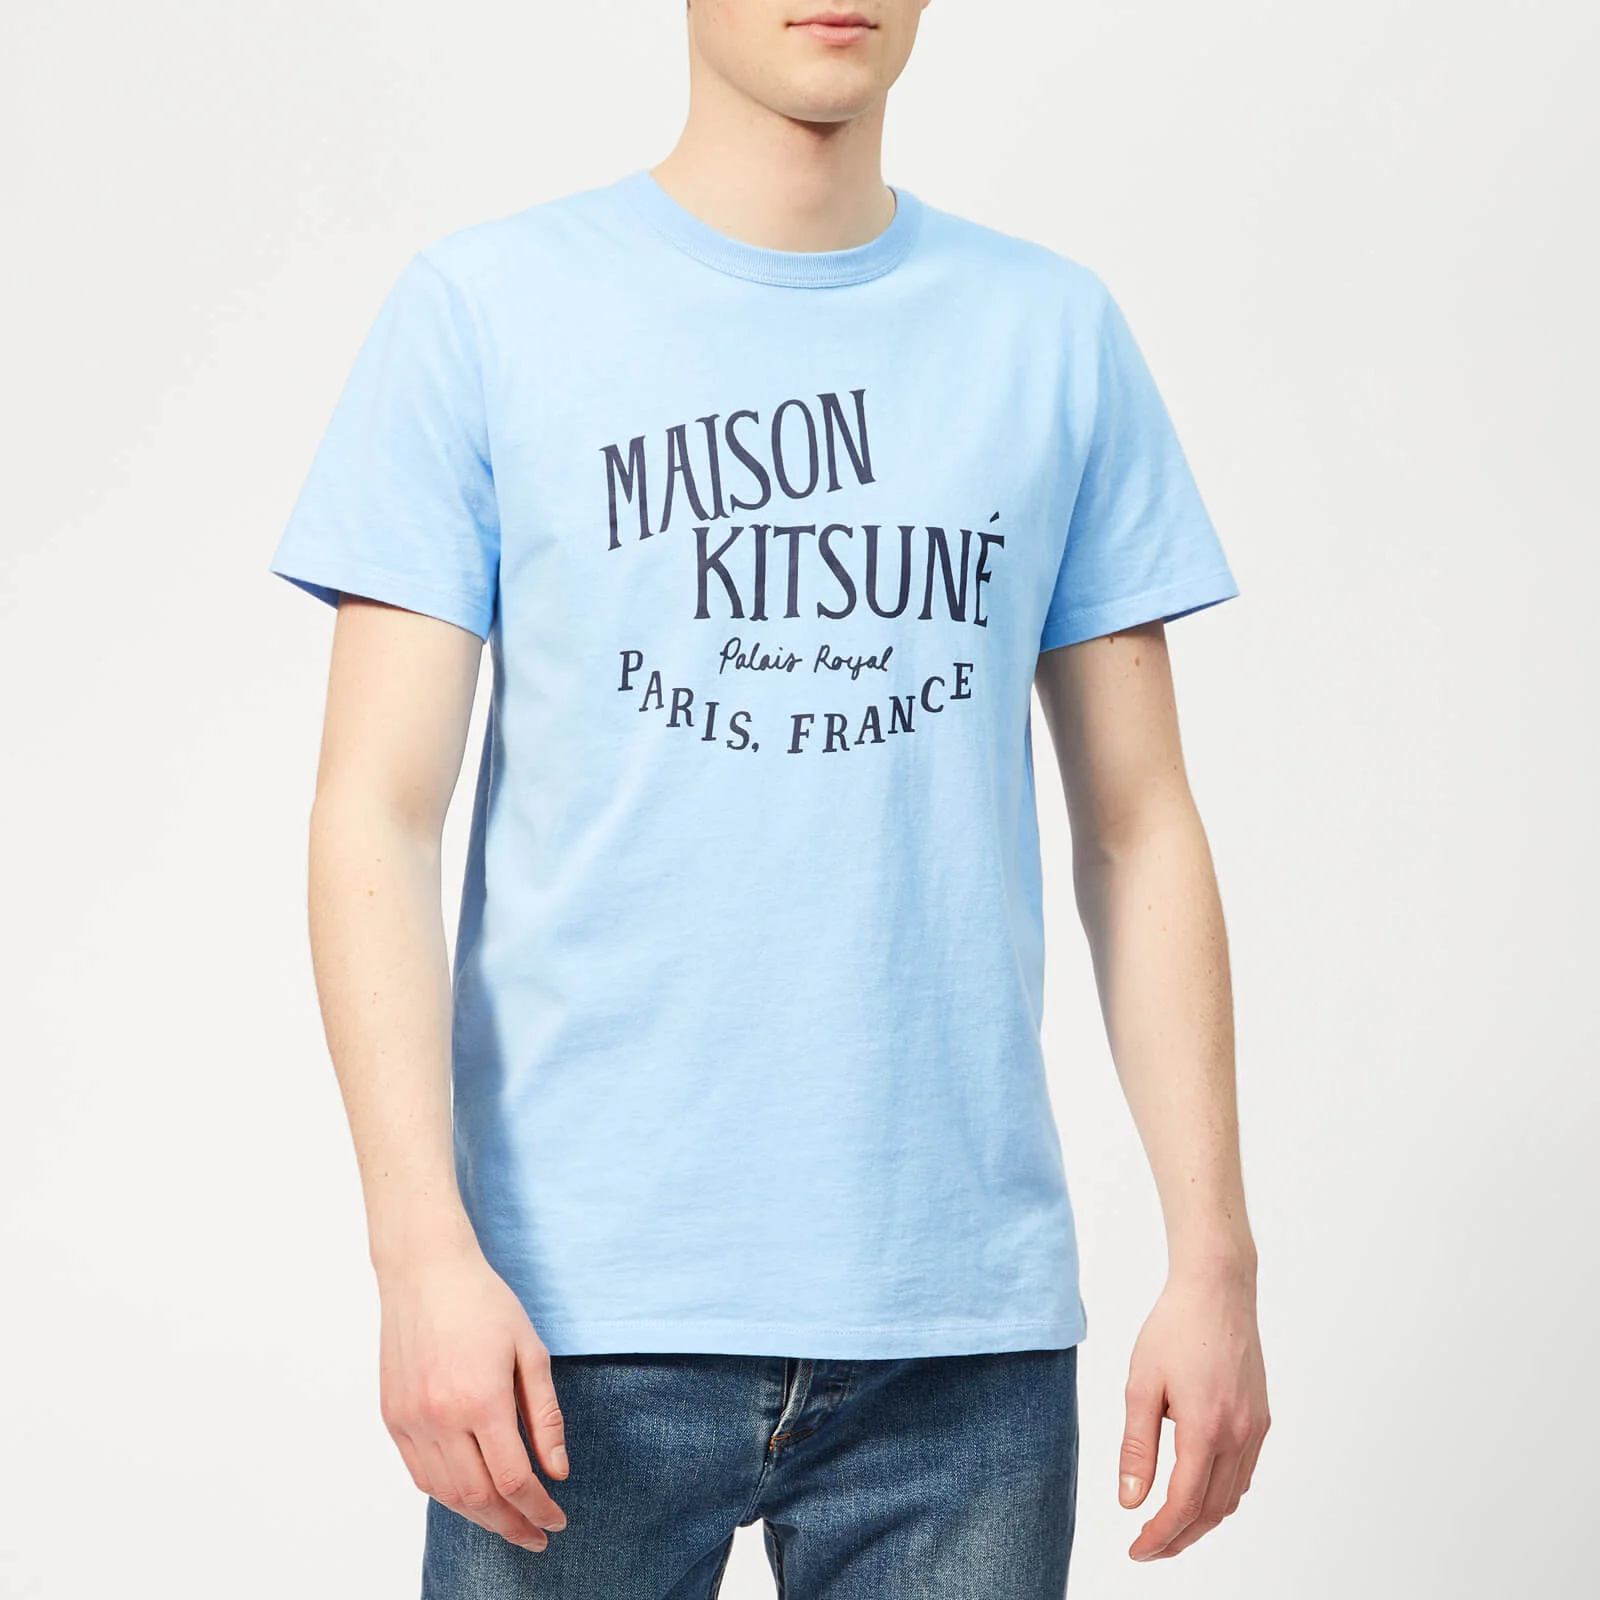 Maison Kitsuné Men's Palais Royal T-Shirt - Light Blue Image 1